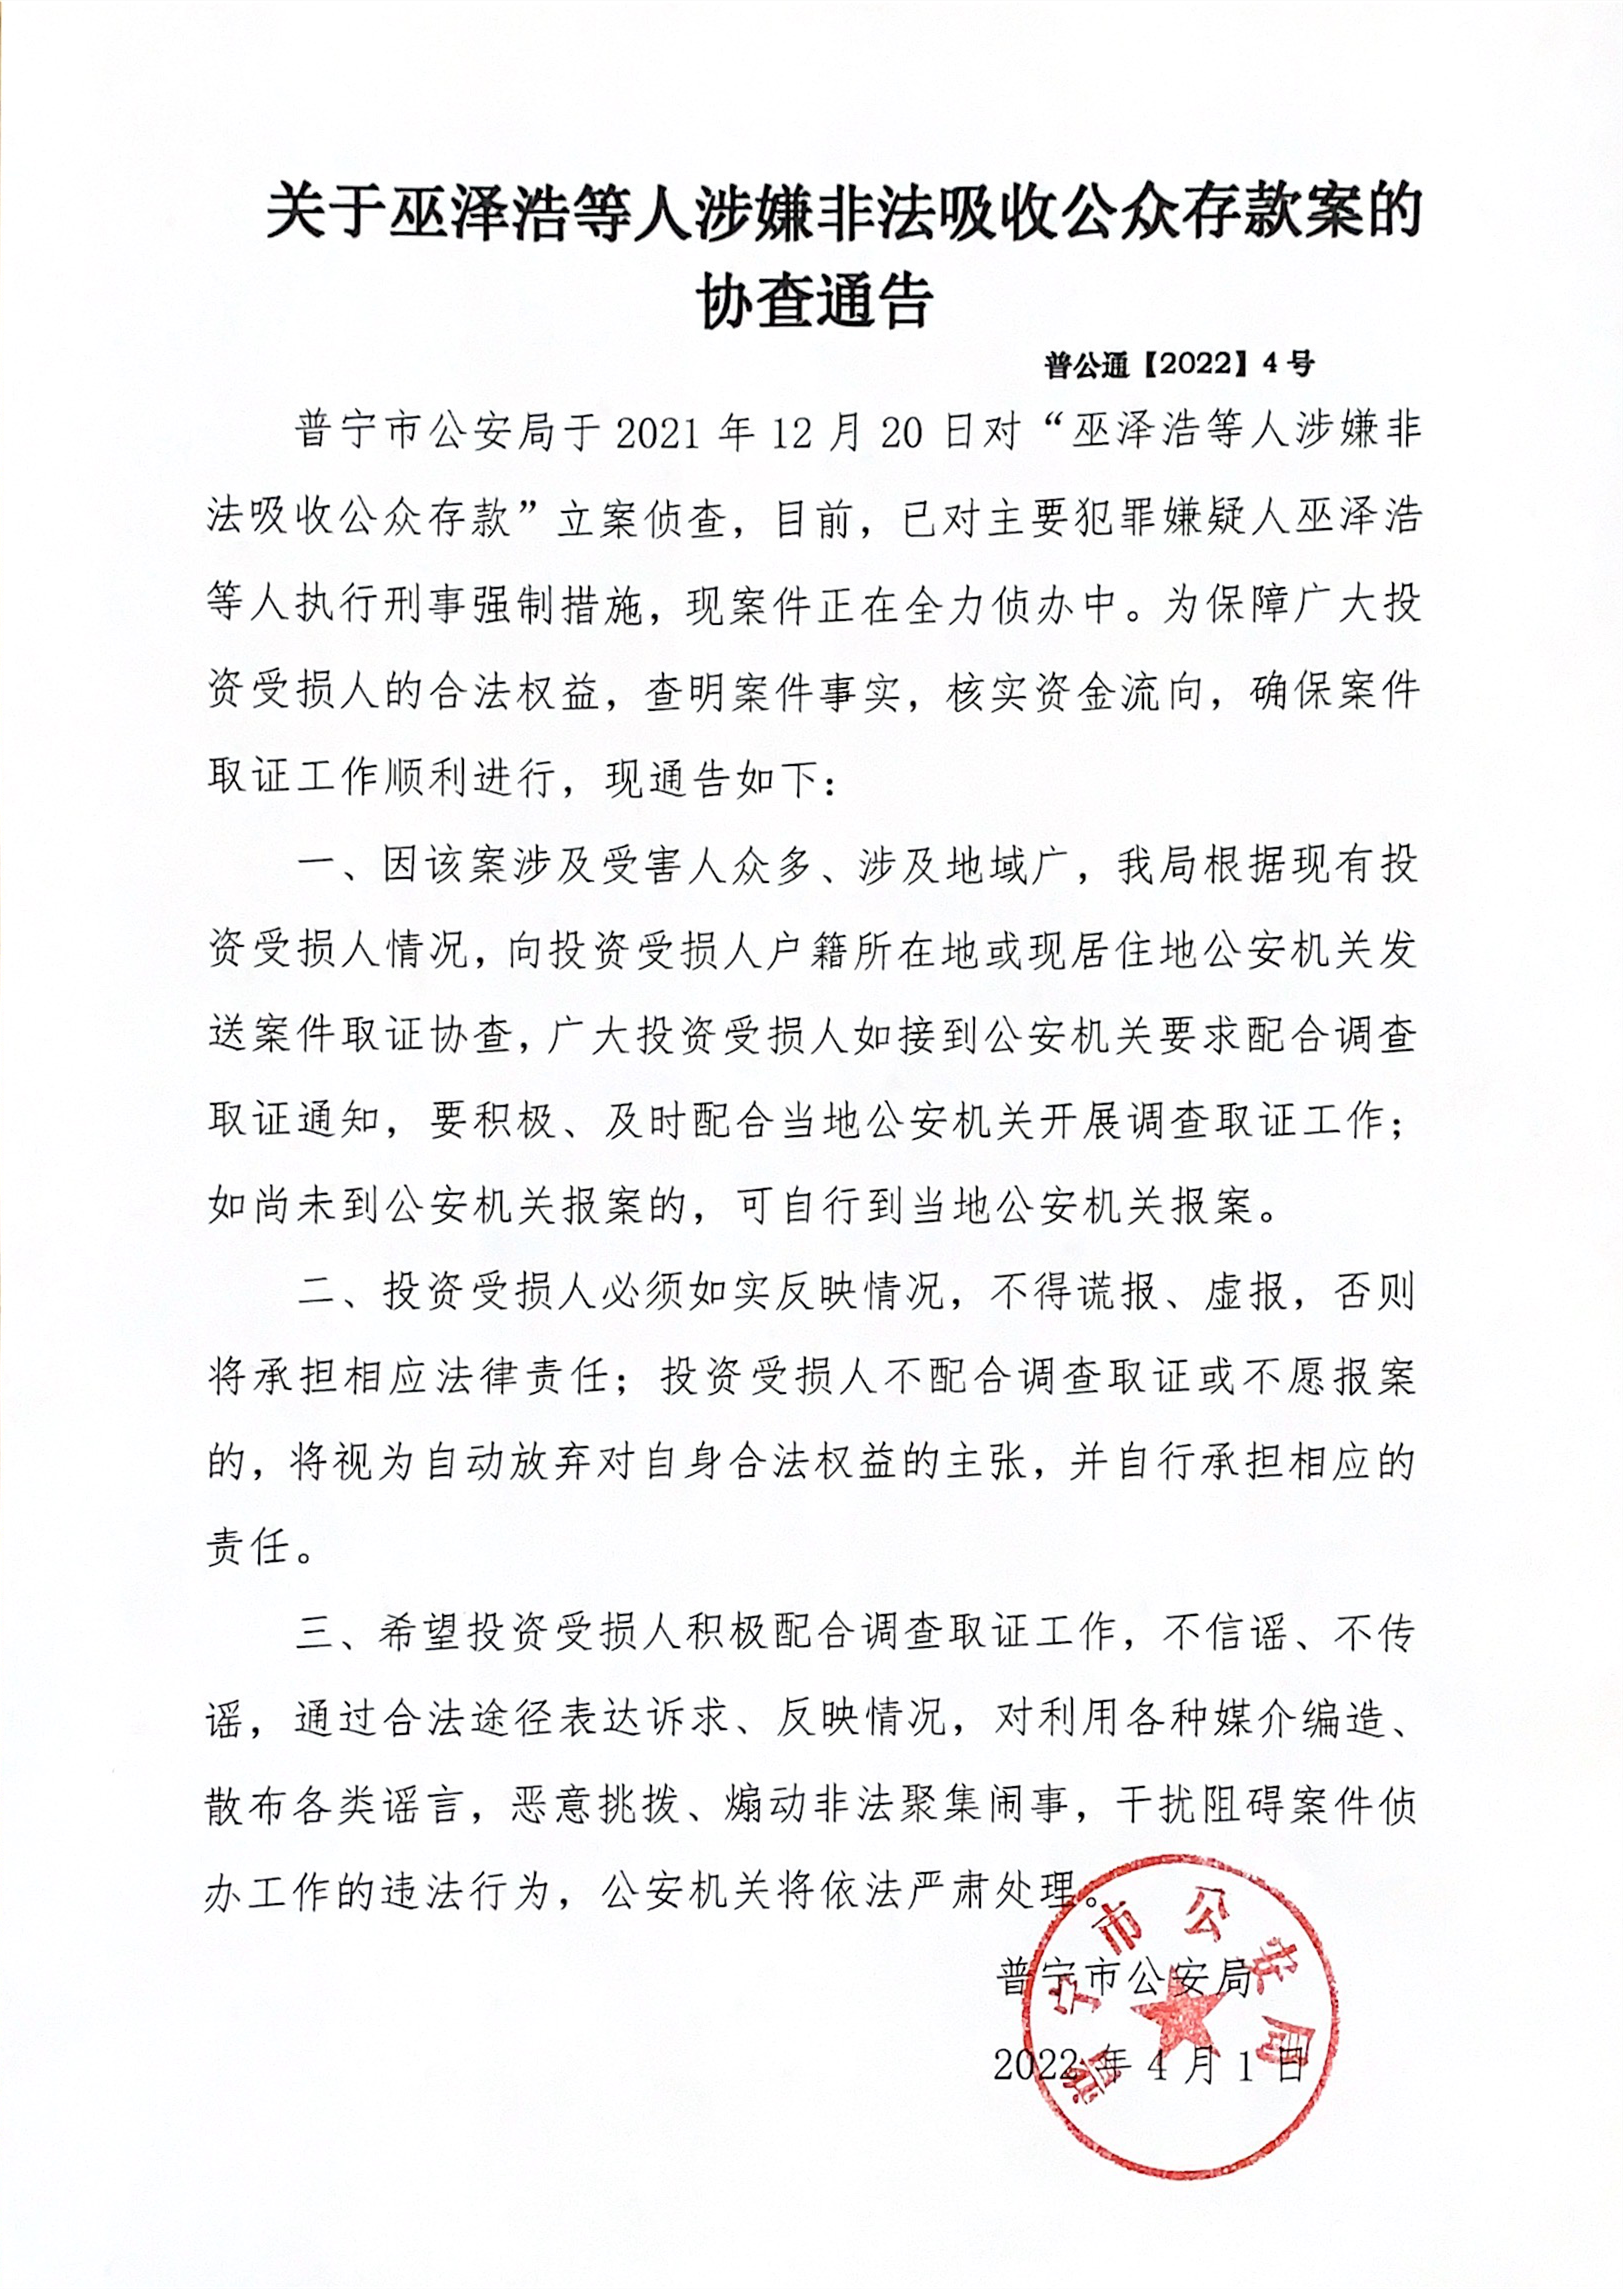 关于巫泽浩等人涉嫌非法吸收公众存款案的协查通告.png